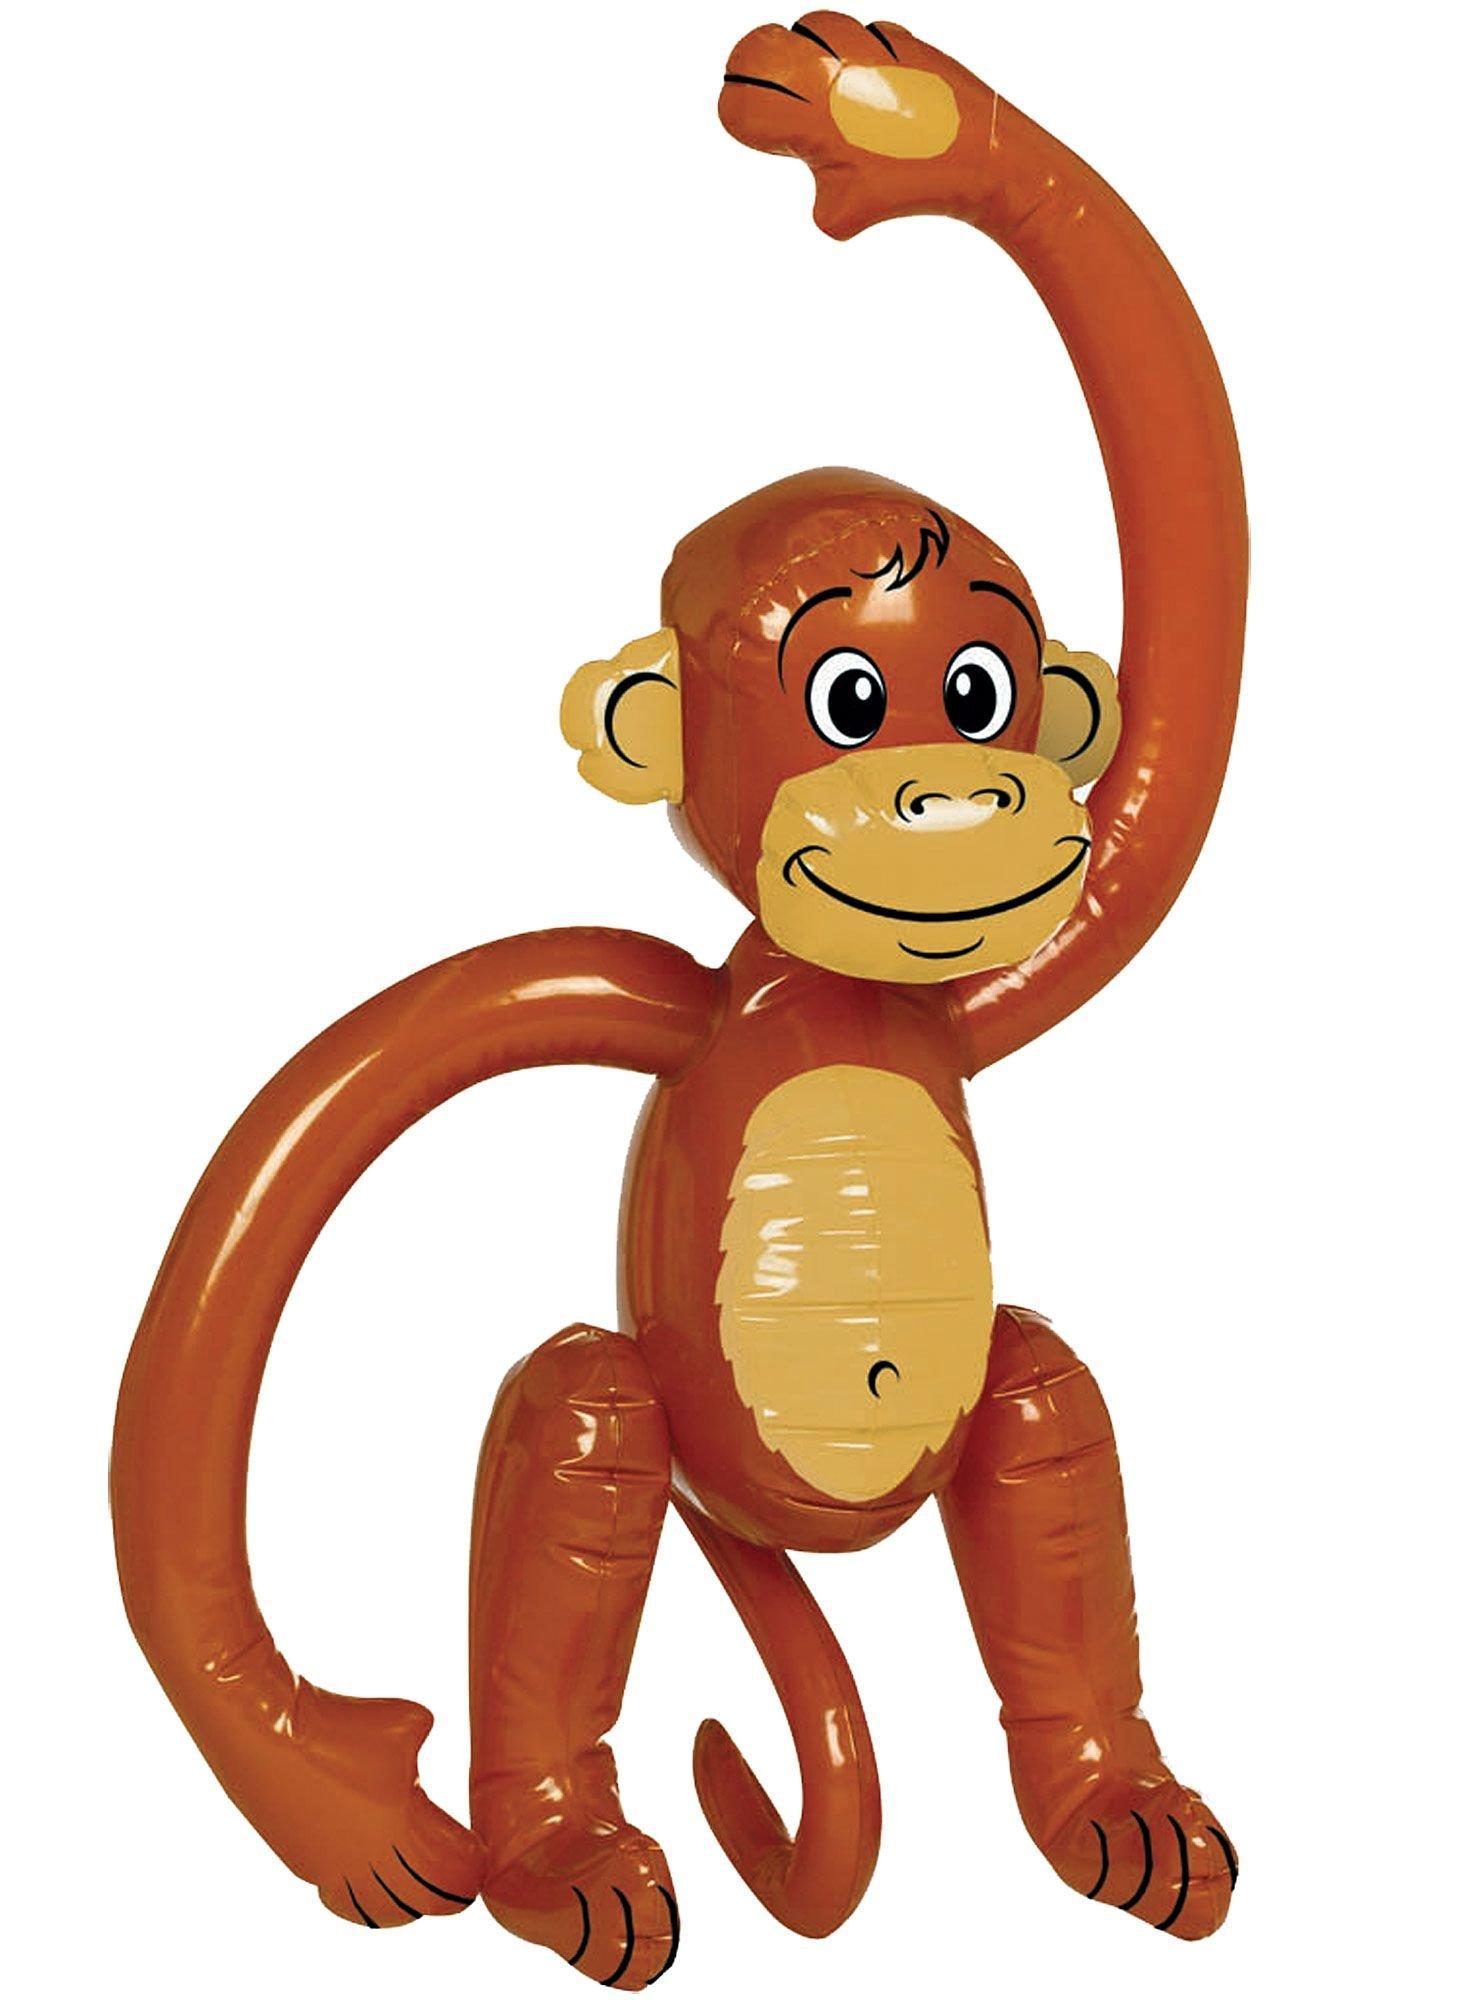 Inflatable Monkey